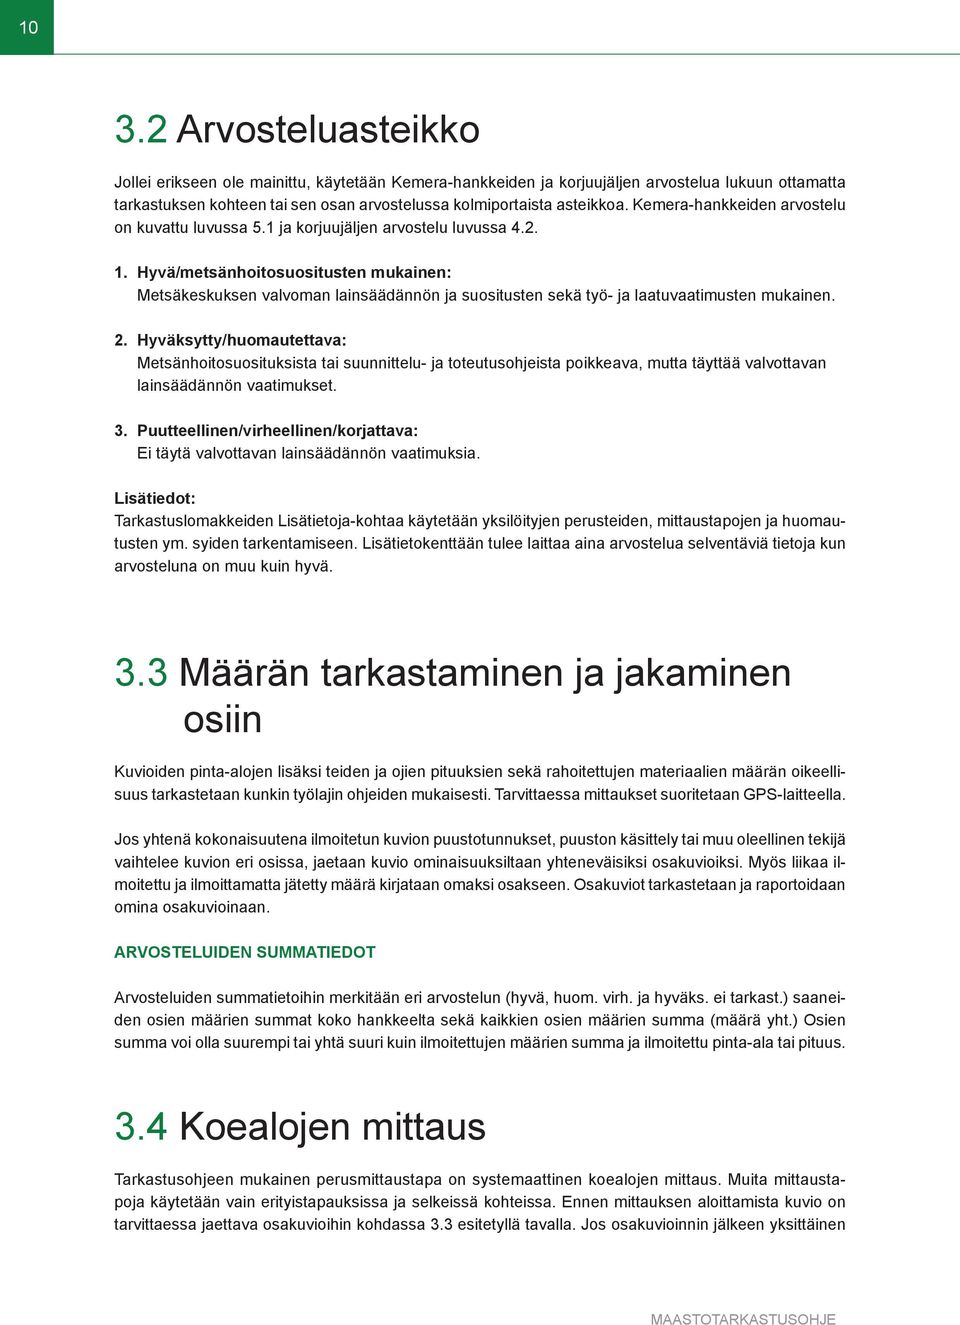 Hyvä/metsänhoitosuositusten mukainen: Metsäkeskuksen valvoman lainsäädännön ja suositusten sekä työ- ja laatuvaatimusten mukainen. 2.